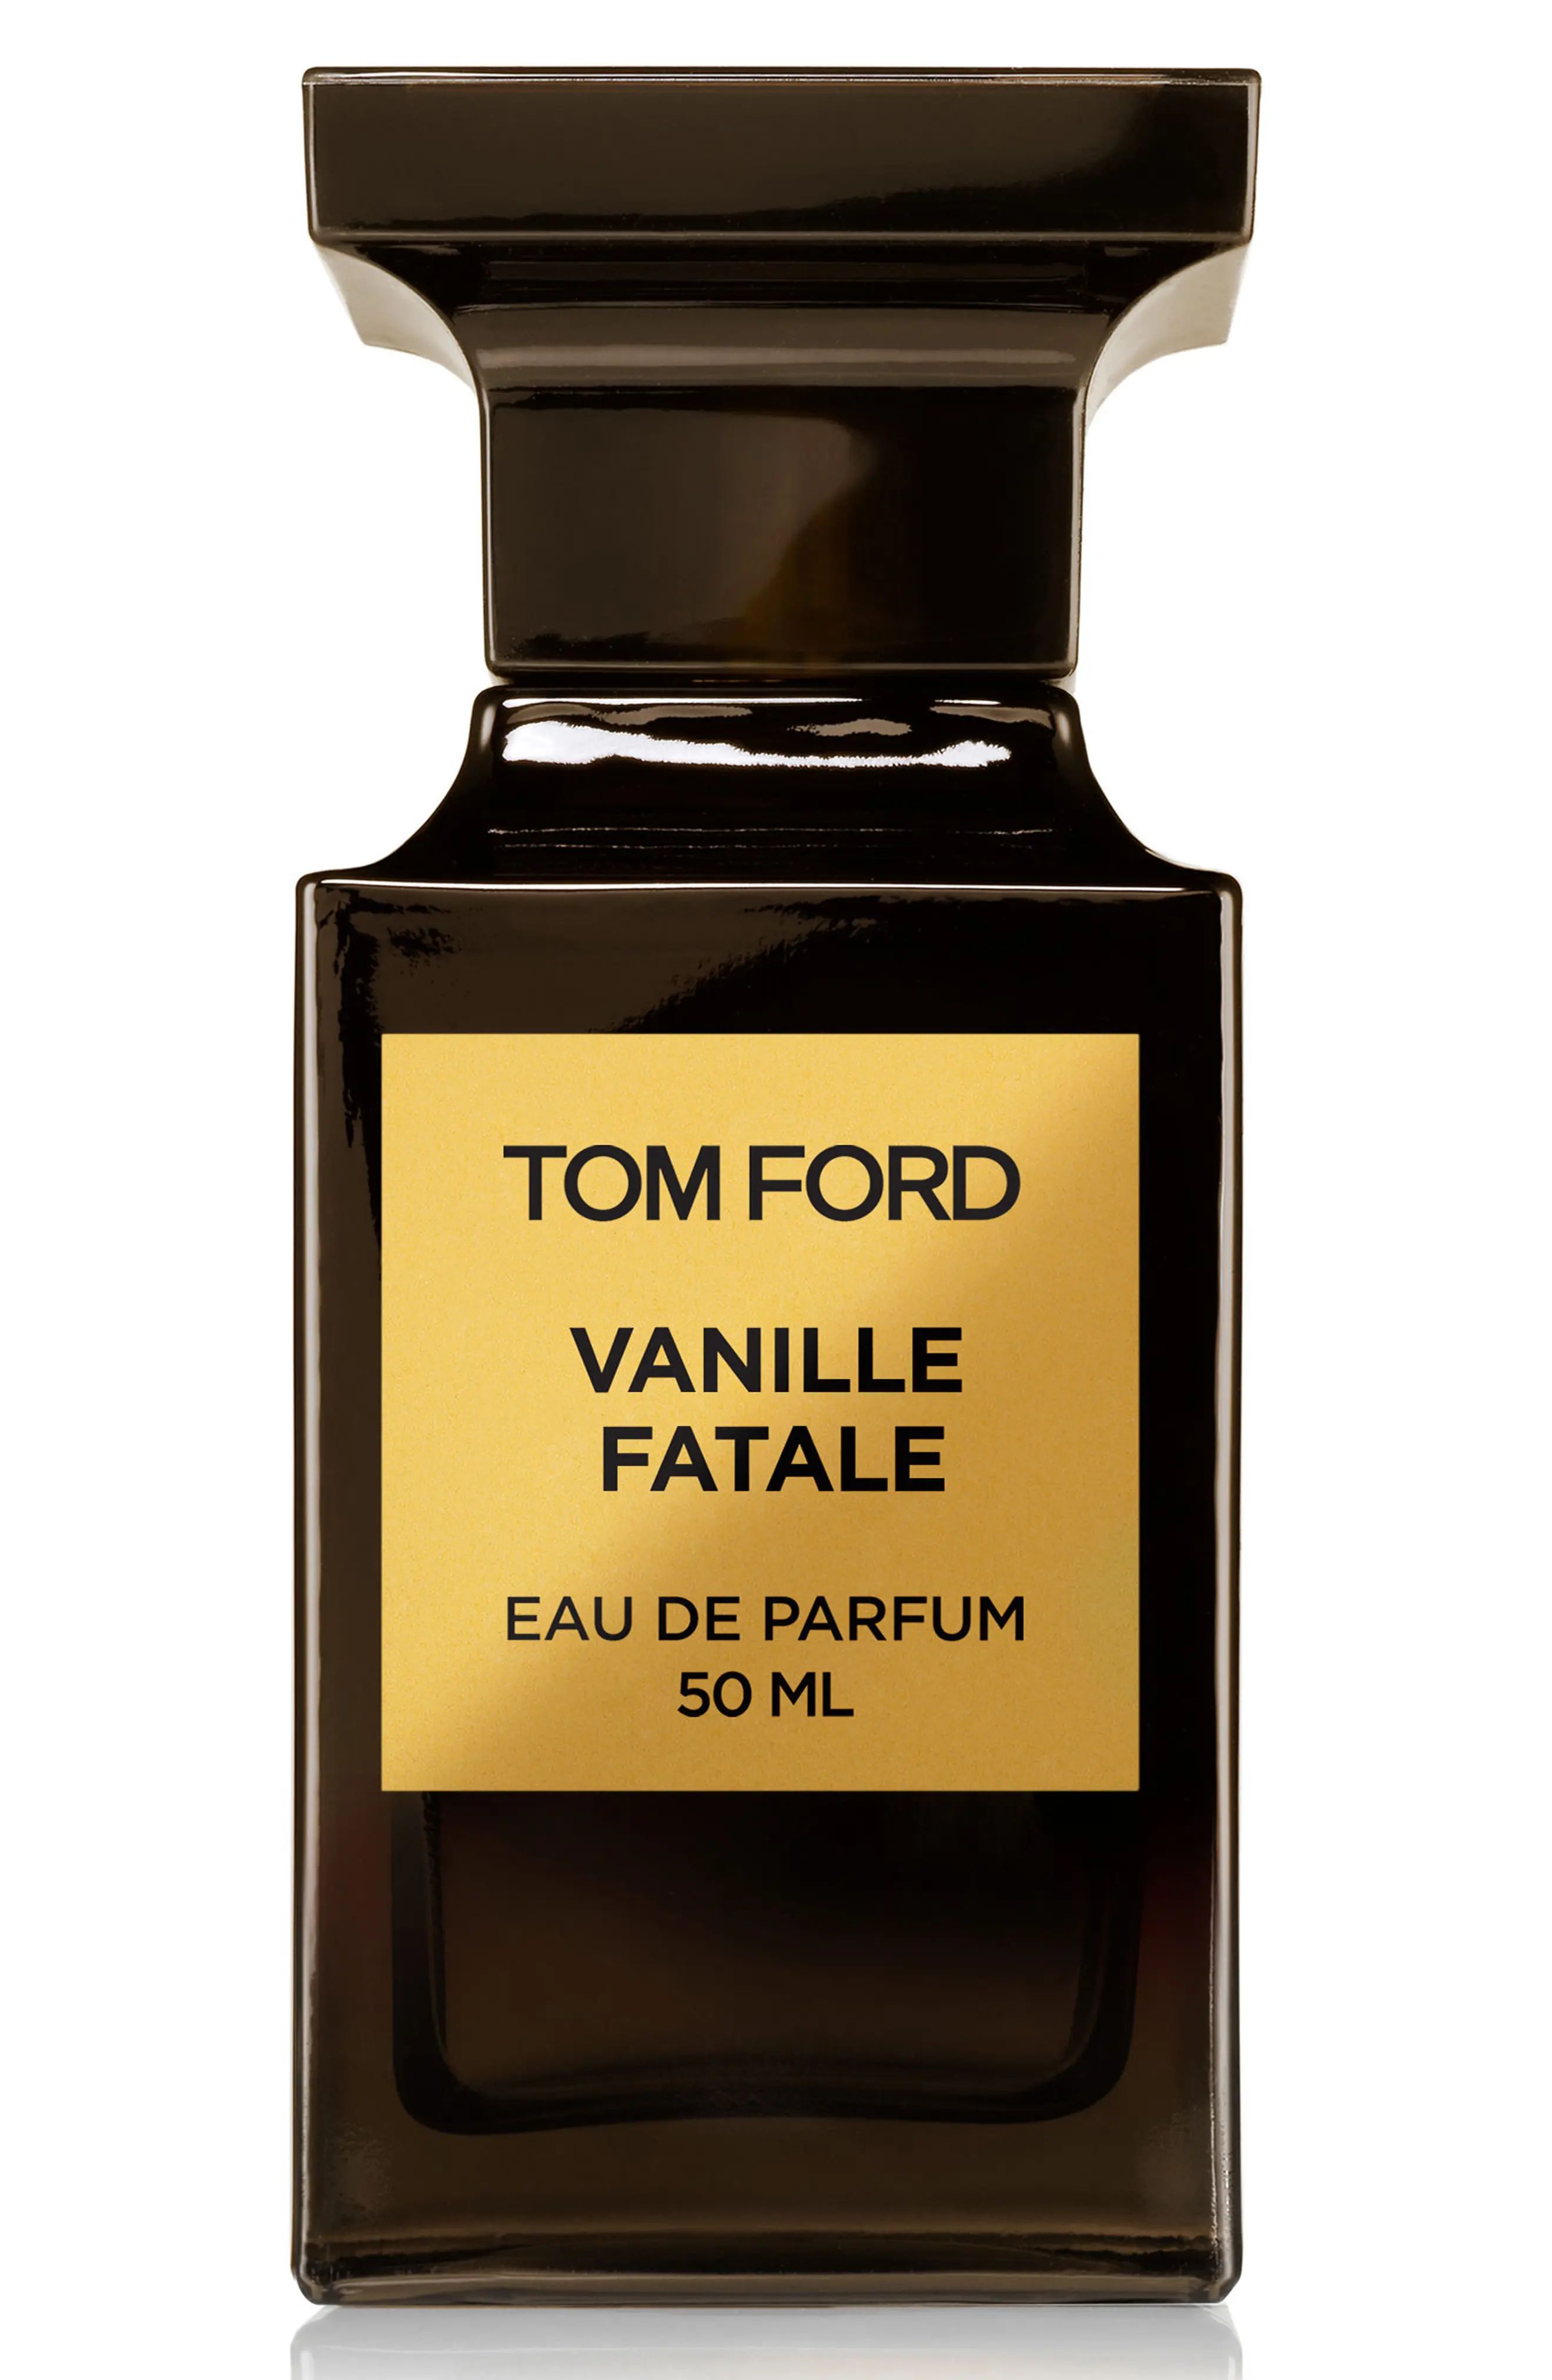 Tom Ford Private Blend Vanille Fatale Eau de Parfum, Size 1.7 Oz at Nordstrom | Nordstrom